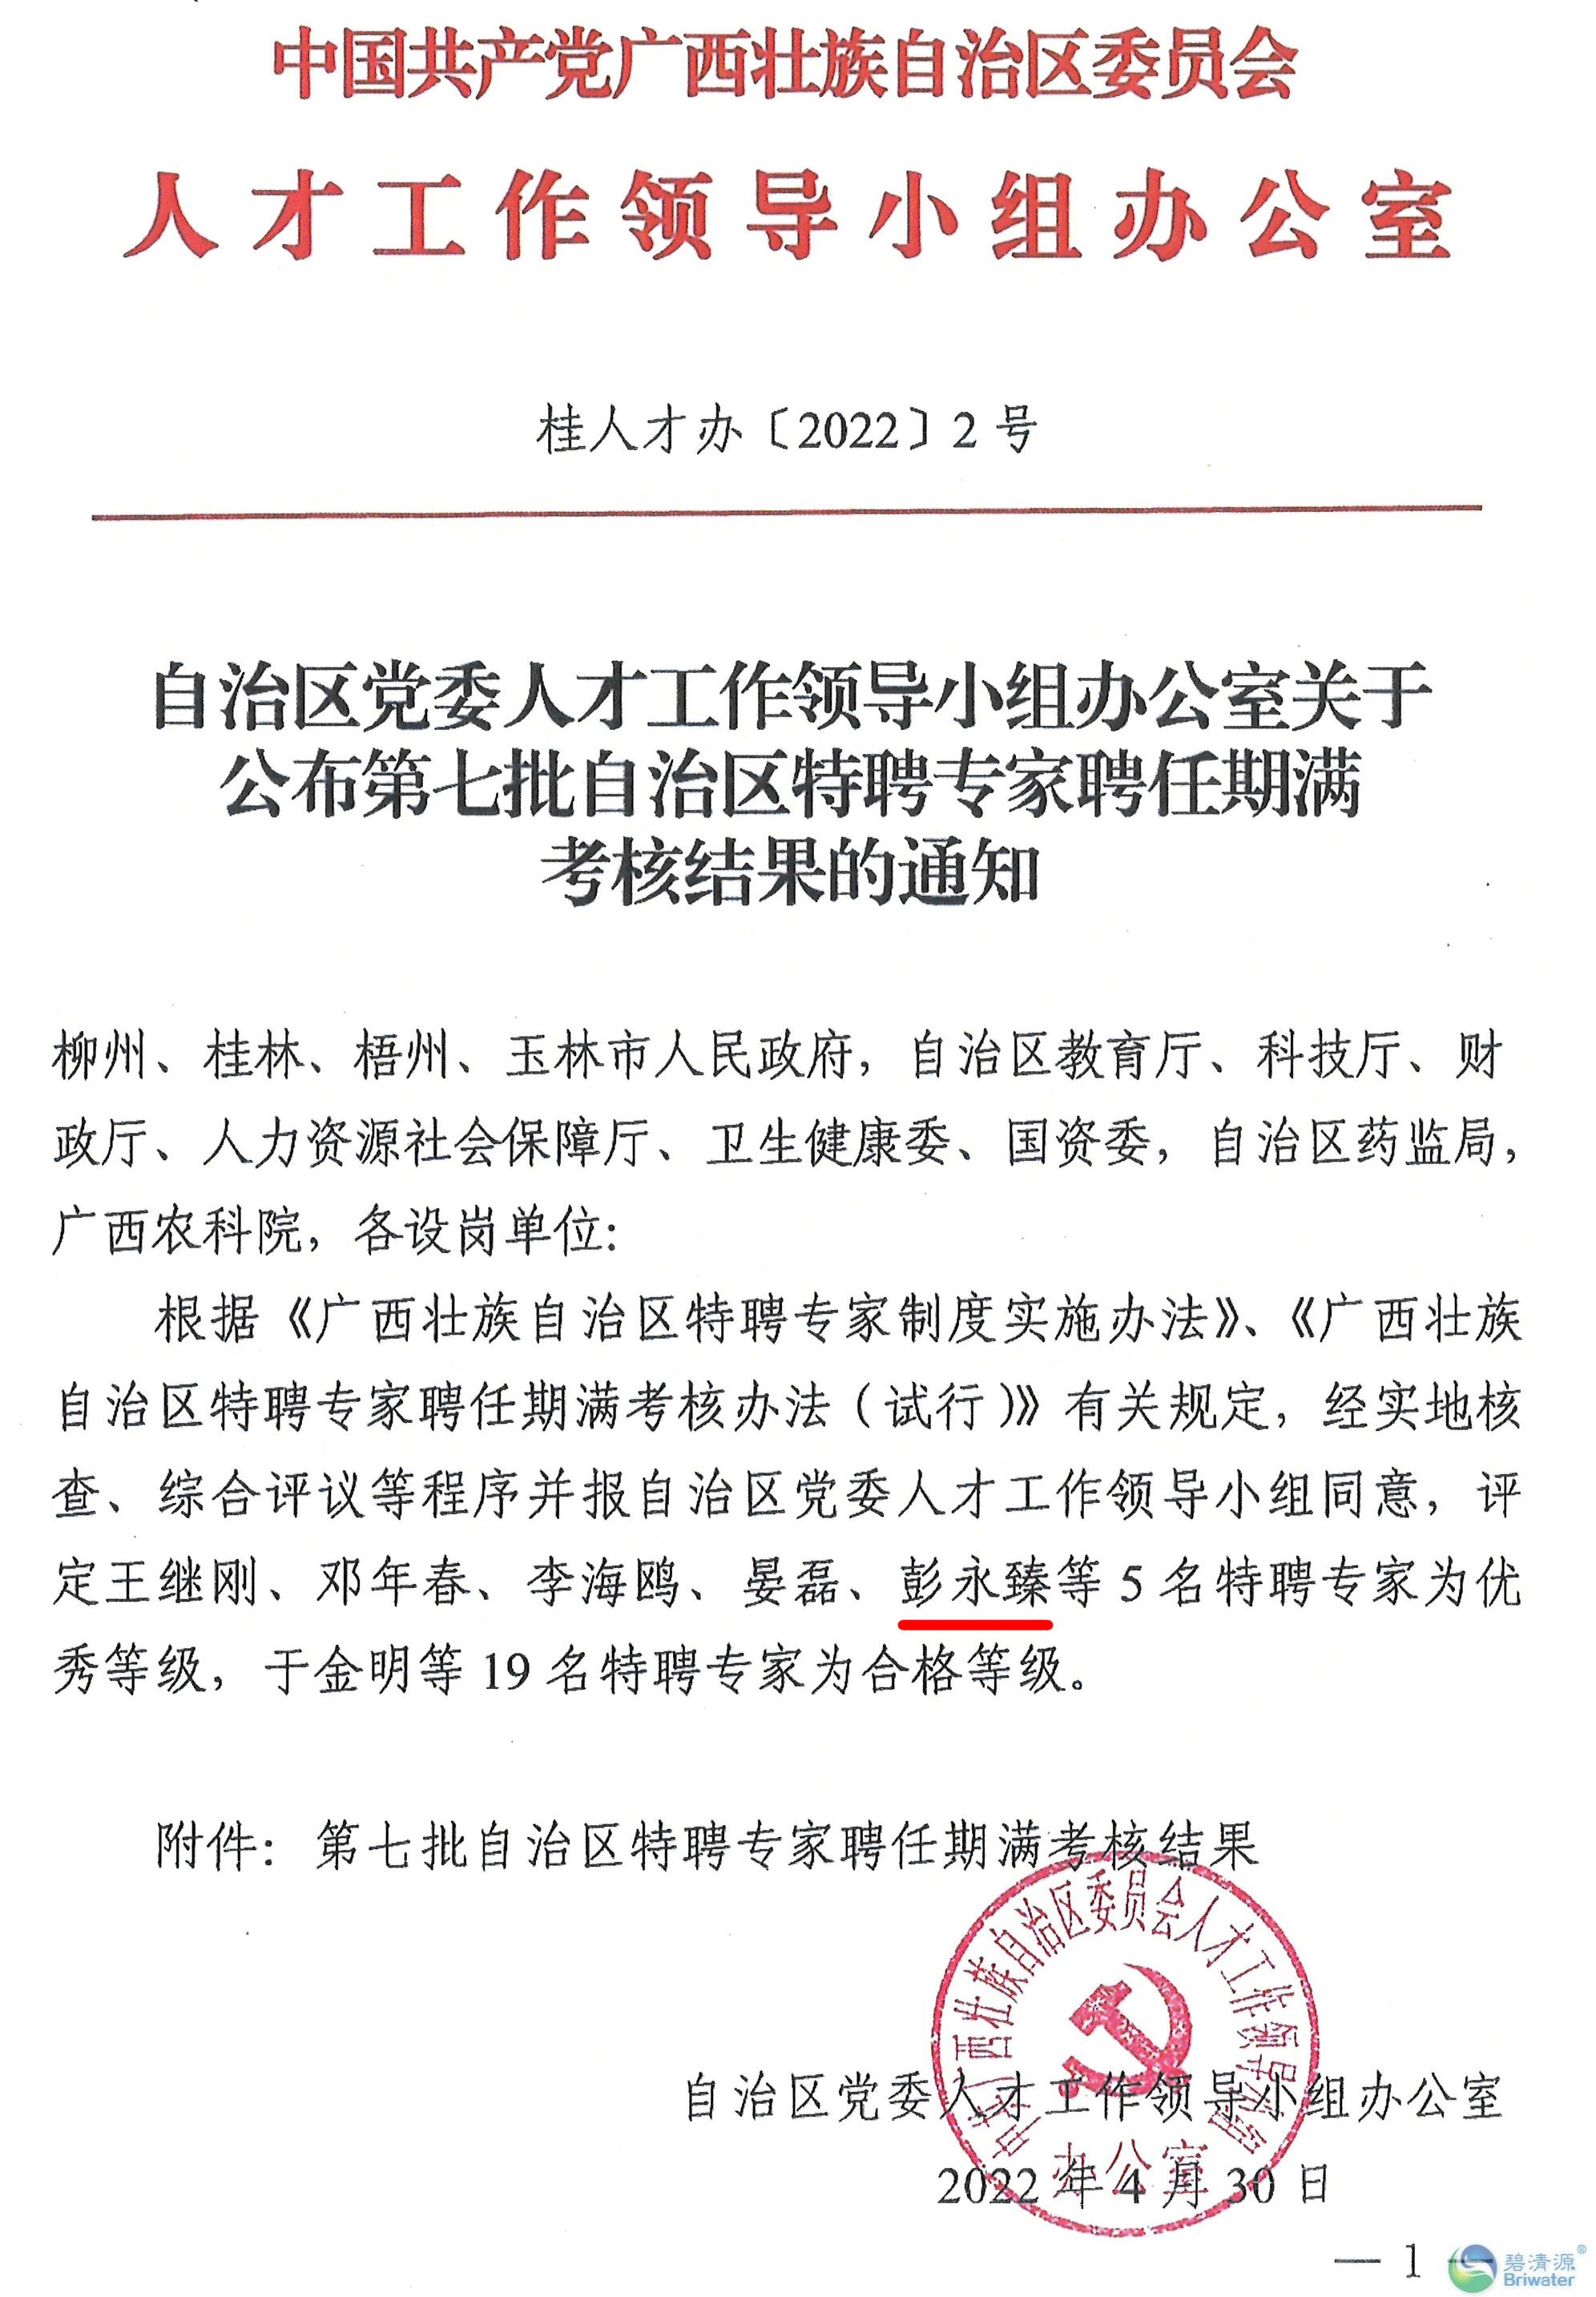 2022.4.30广西壮族自治区第七批特聘专家期满考核结果-1.jpg